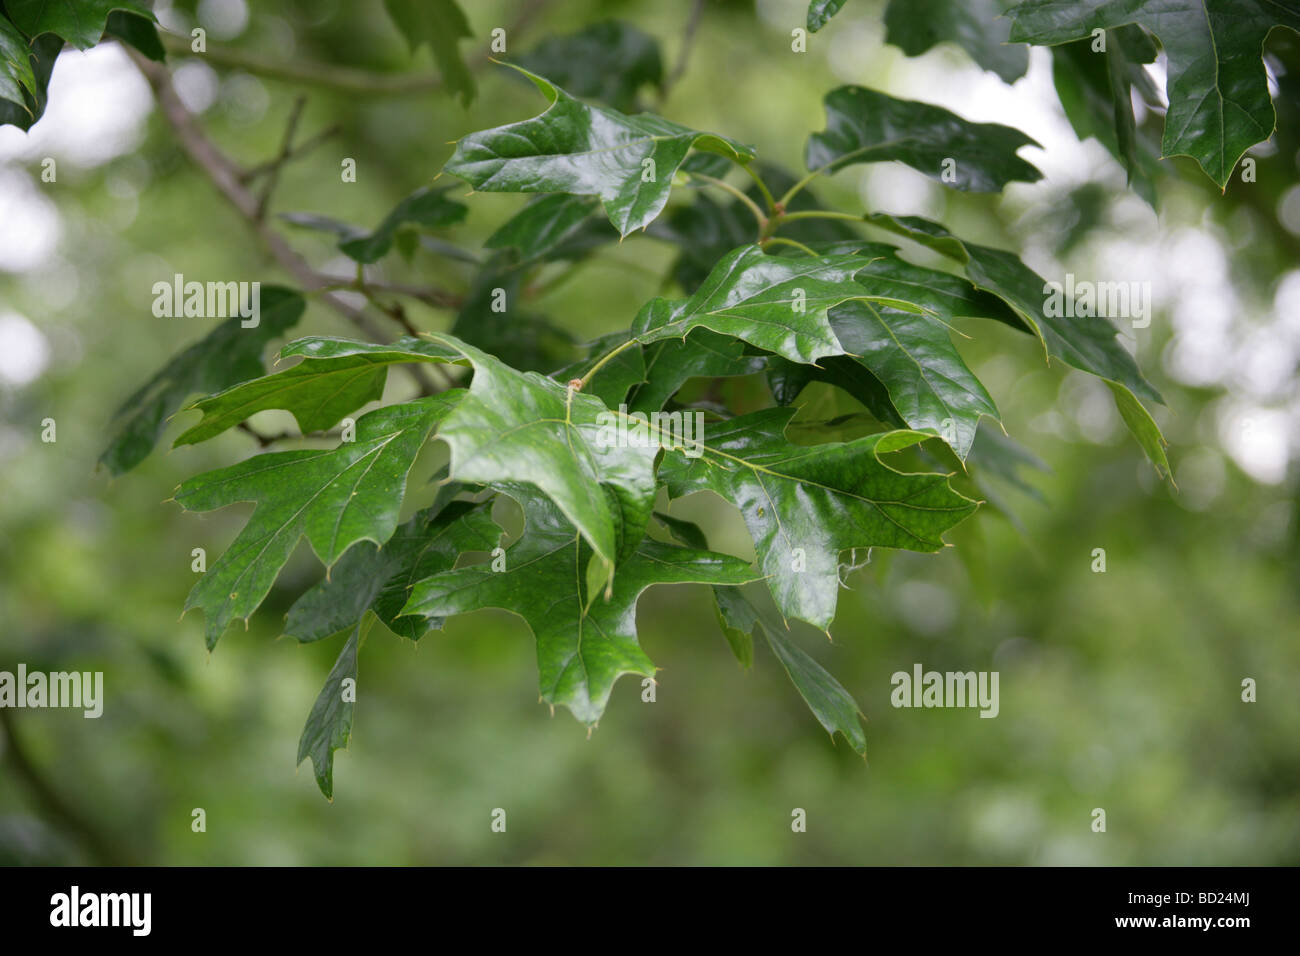 Perno del nord di quercia o di Hill's Quercia foglie, Quercus ellipsoidalis, Fagaceae, Lobatae, Nord America orientale Foto Stock